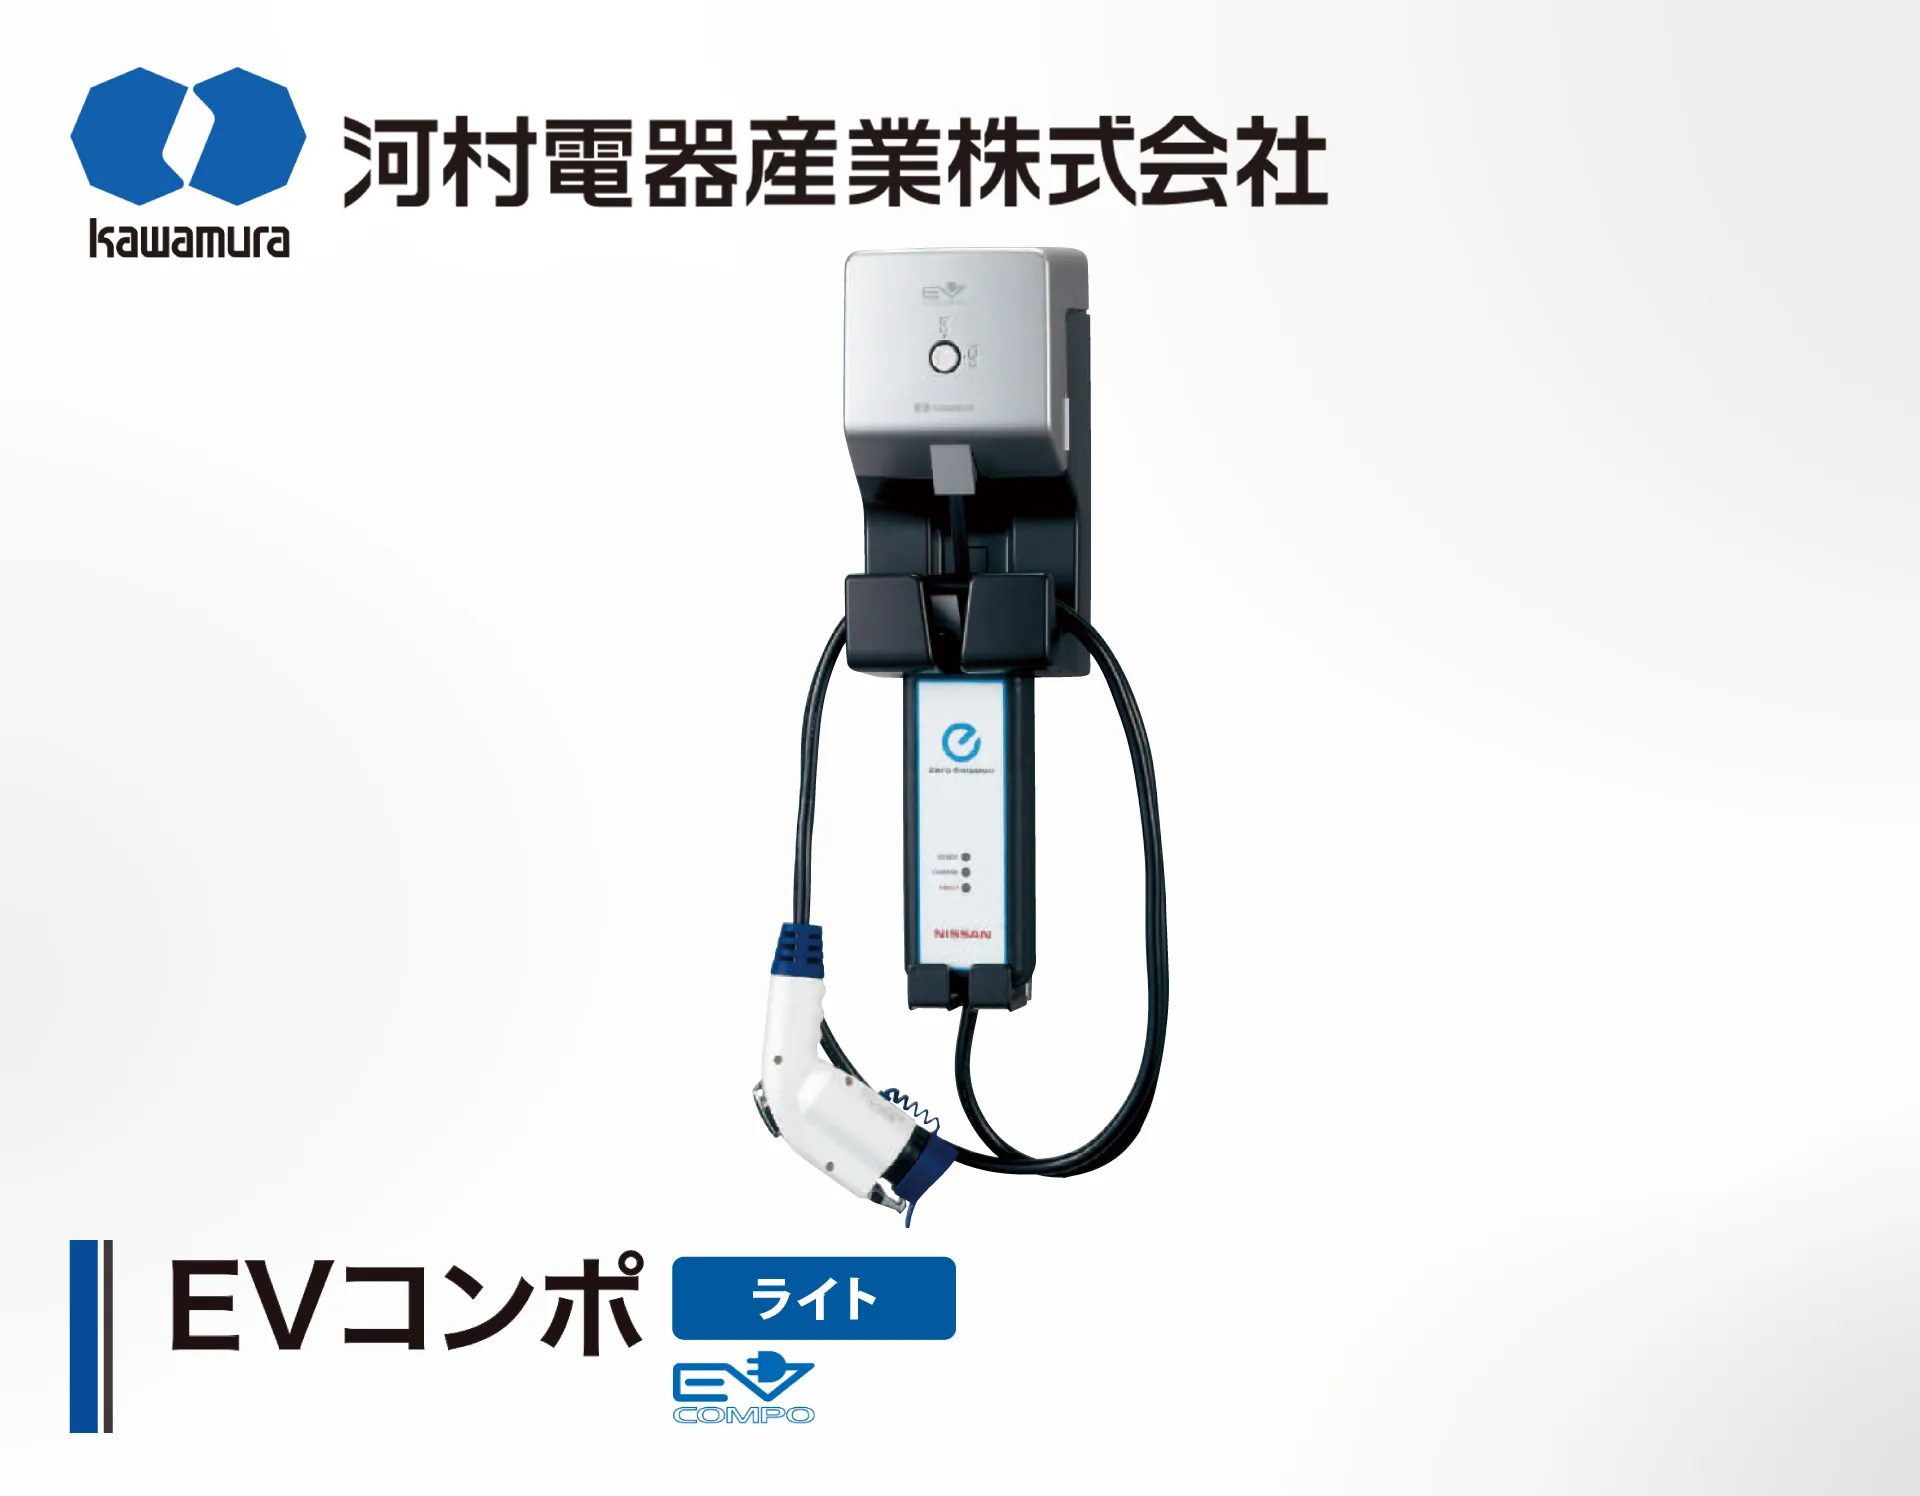 河村電器 EVコンポ ライト の製品詳細